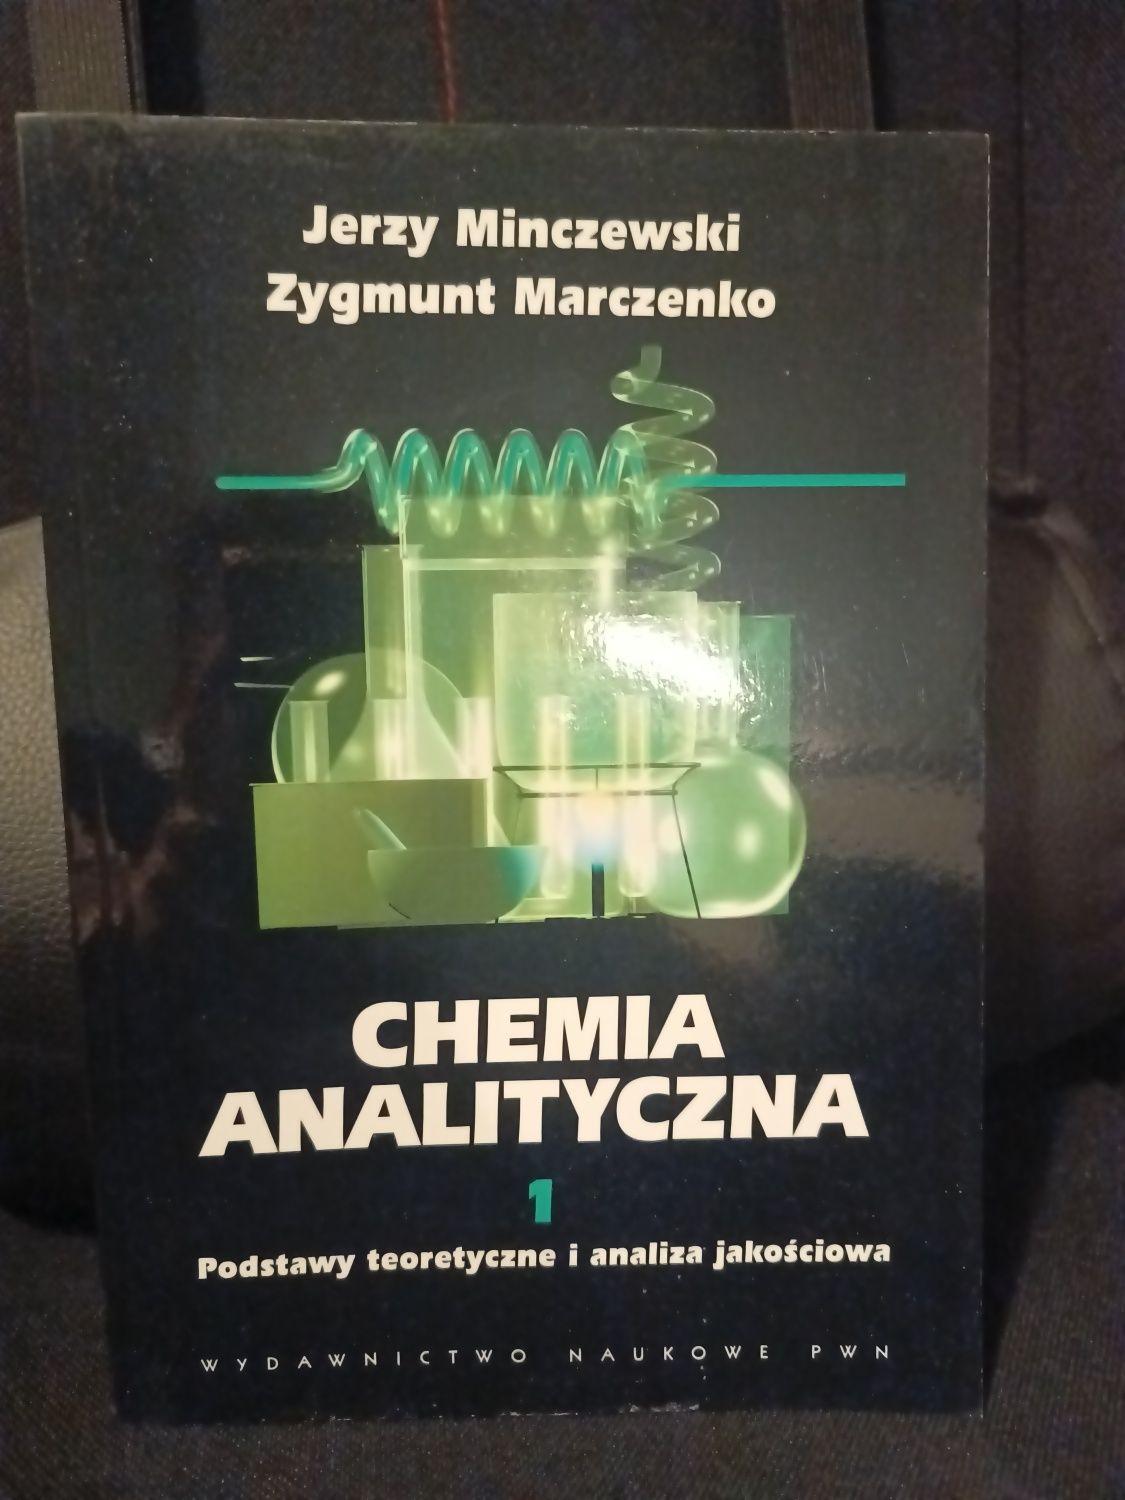 Chemia Analityczna 1 podręcznik na studia